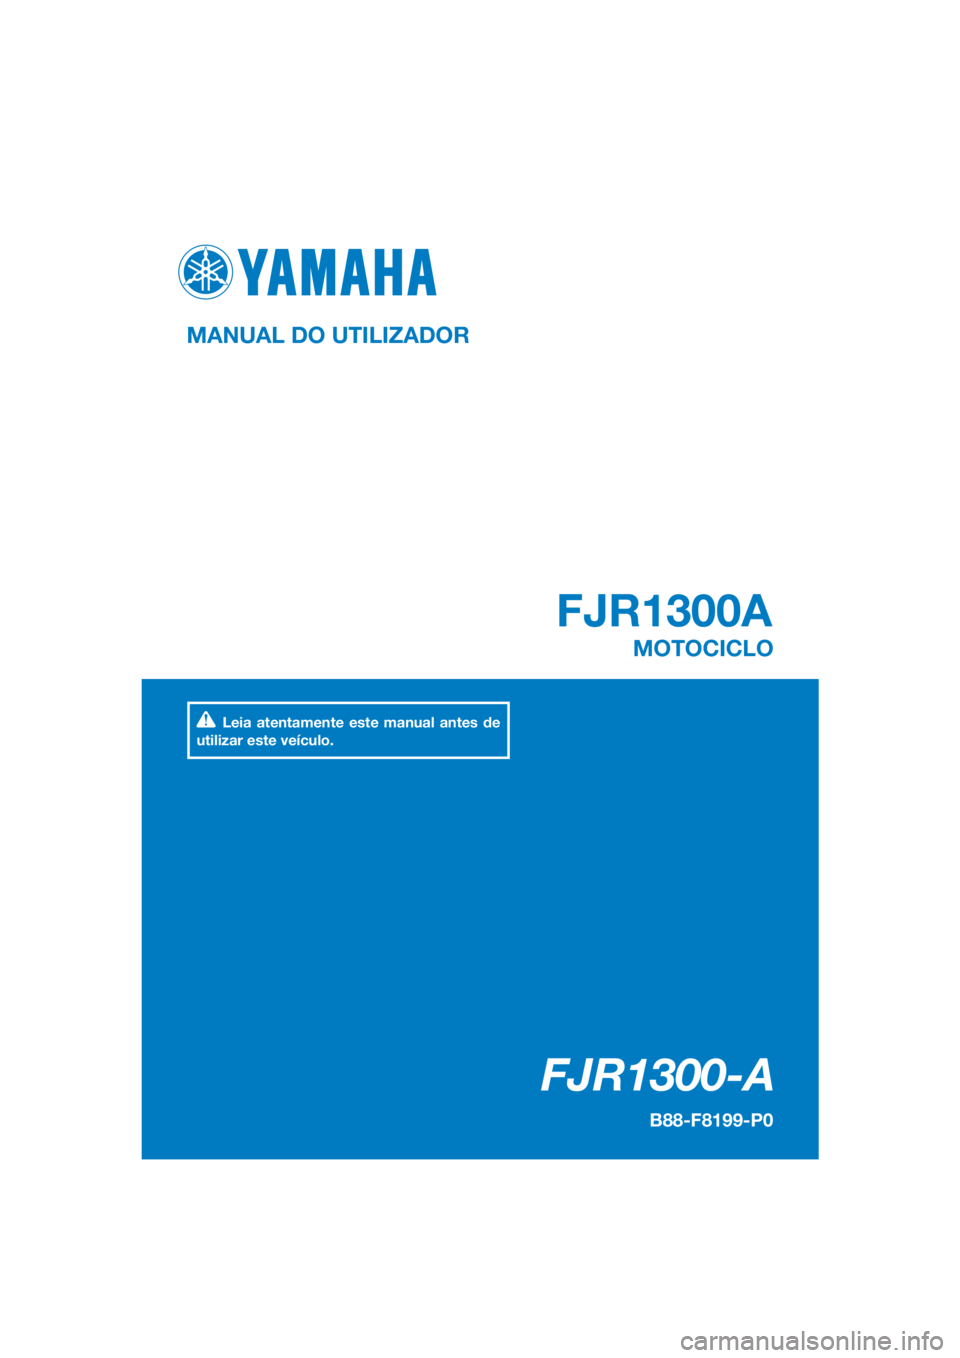 YAMAHA FJR1300A 2016  Manual de utilização (in Portuguese) DIC183
FJR1300-A
FJR1300A
MANUAL DO UTILIZADOR
B88-F8199-P0
MOTOCICLO
Leia atentamente este manual antes de 
utilizar este veículo.
[Portuguese  (P)] 